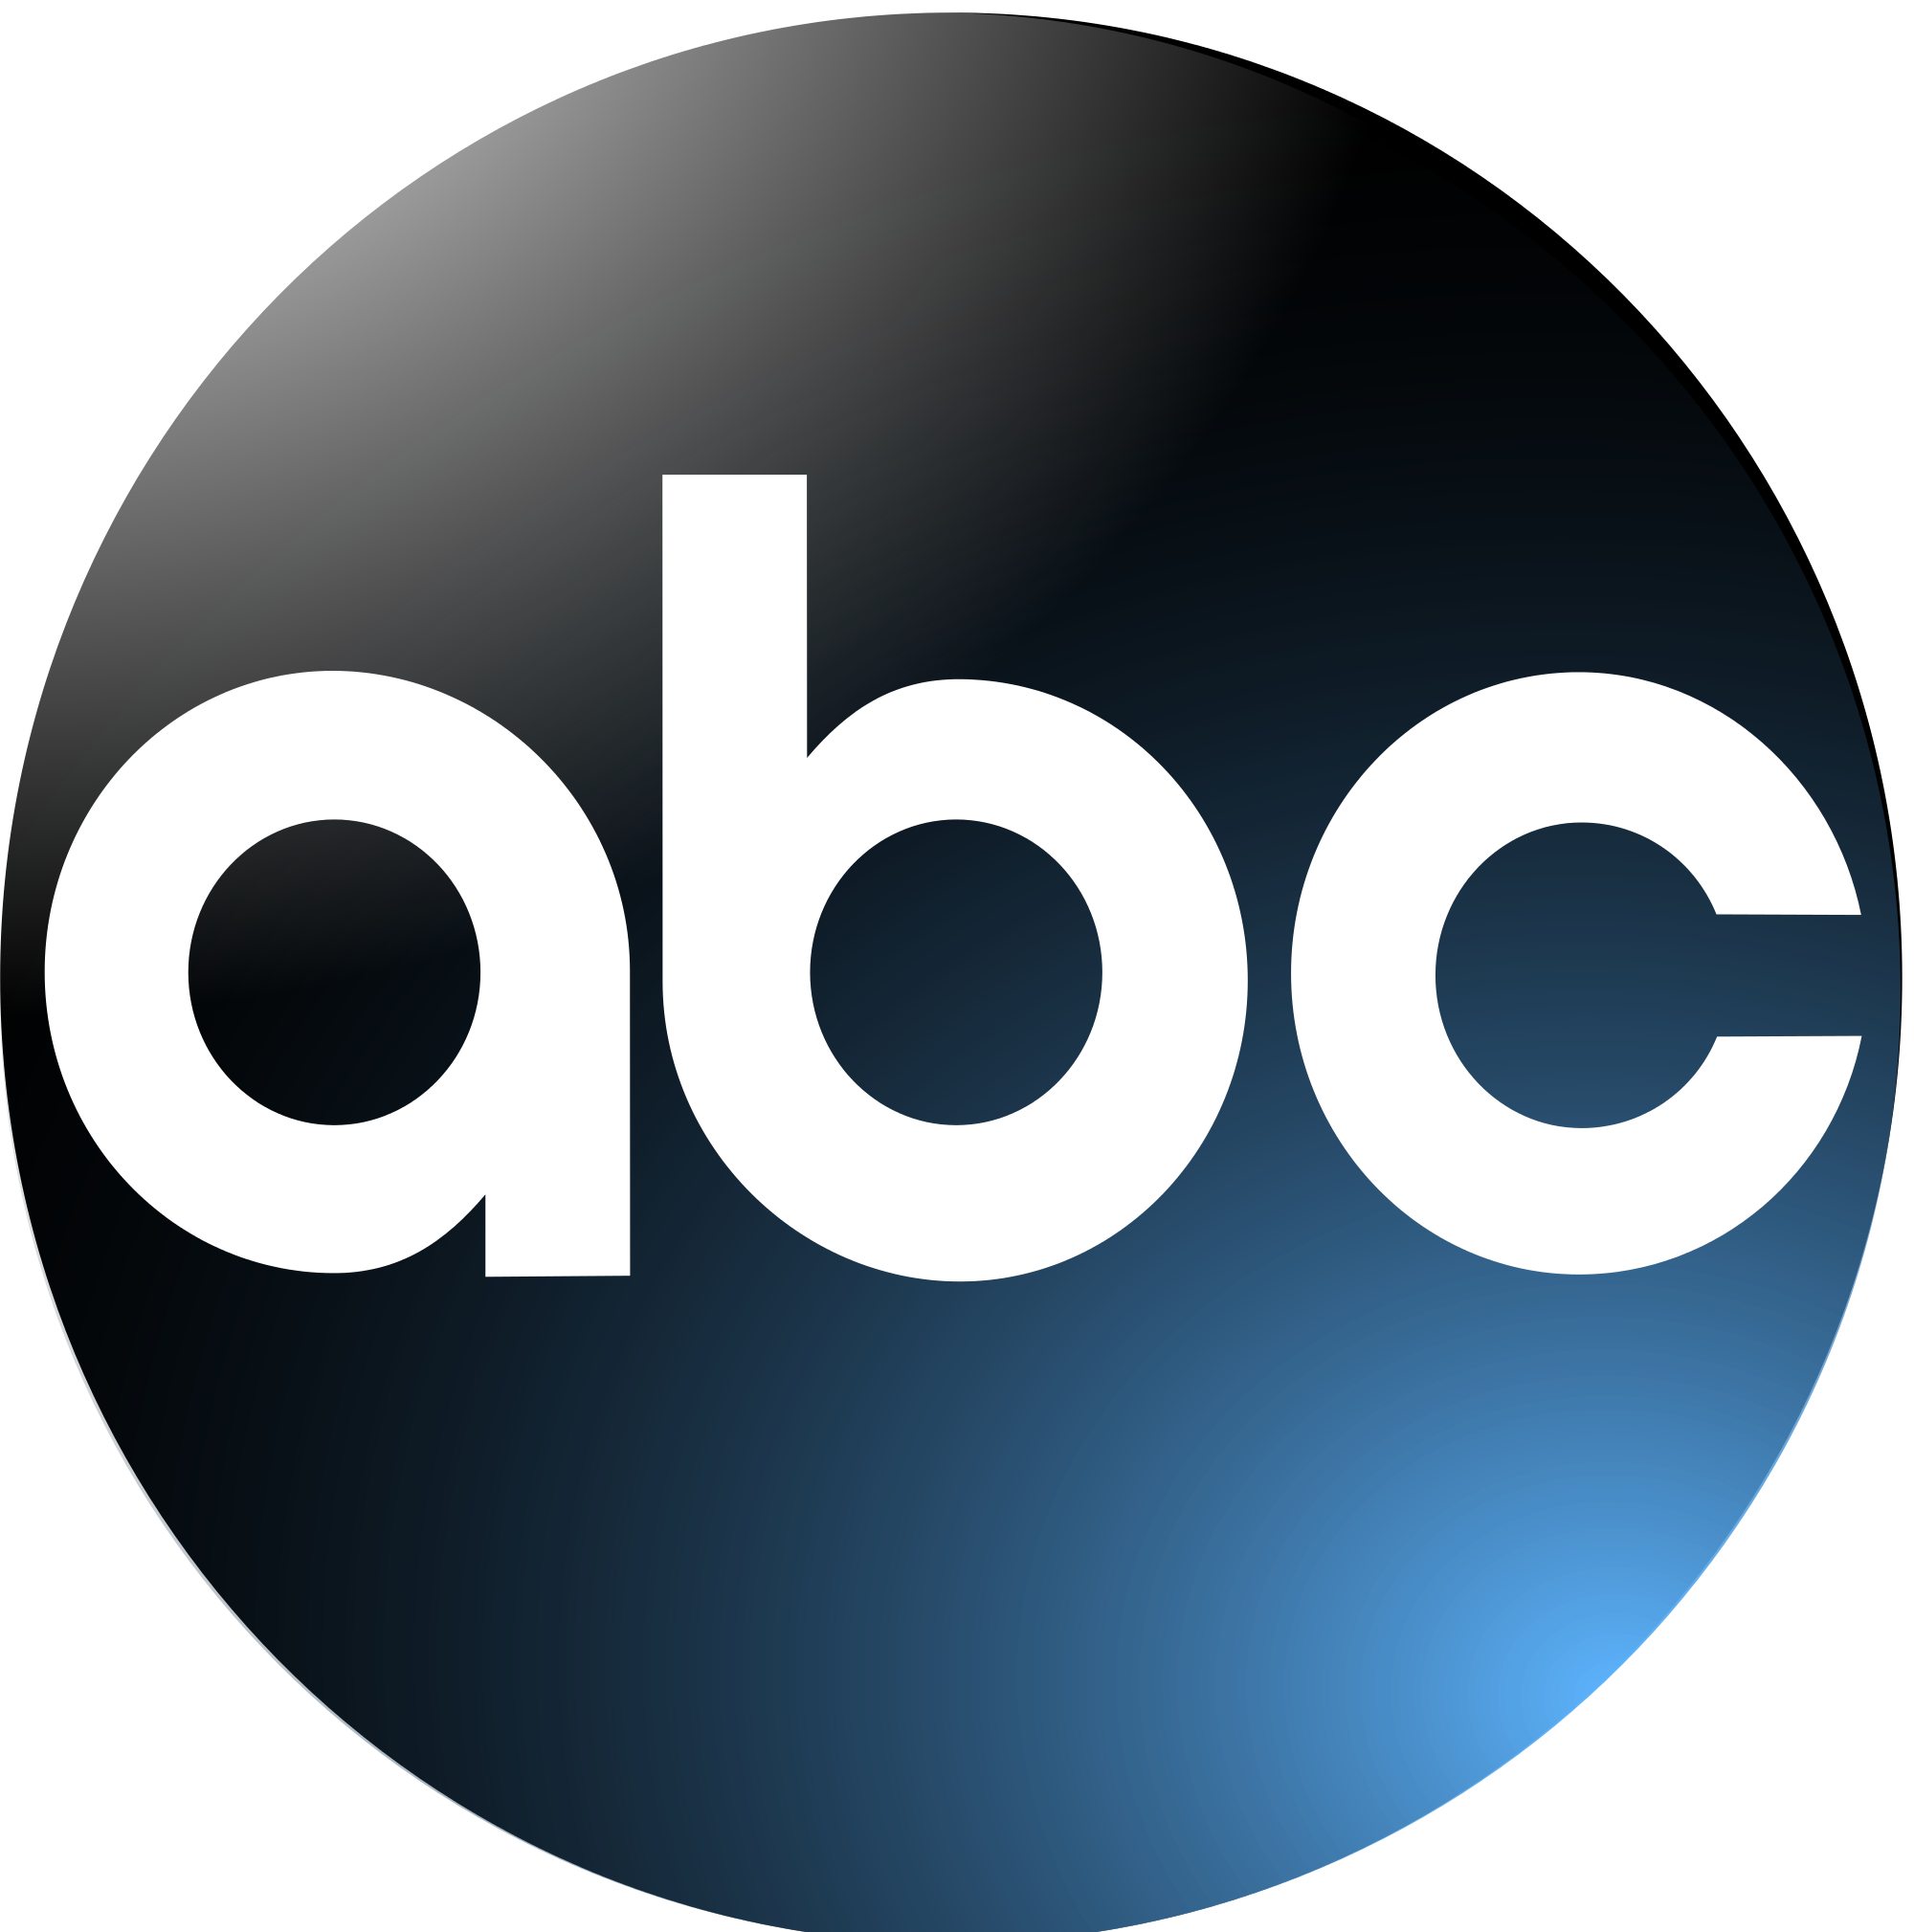 ABC-logo-psd5787